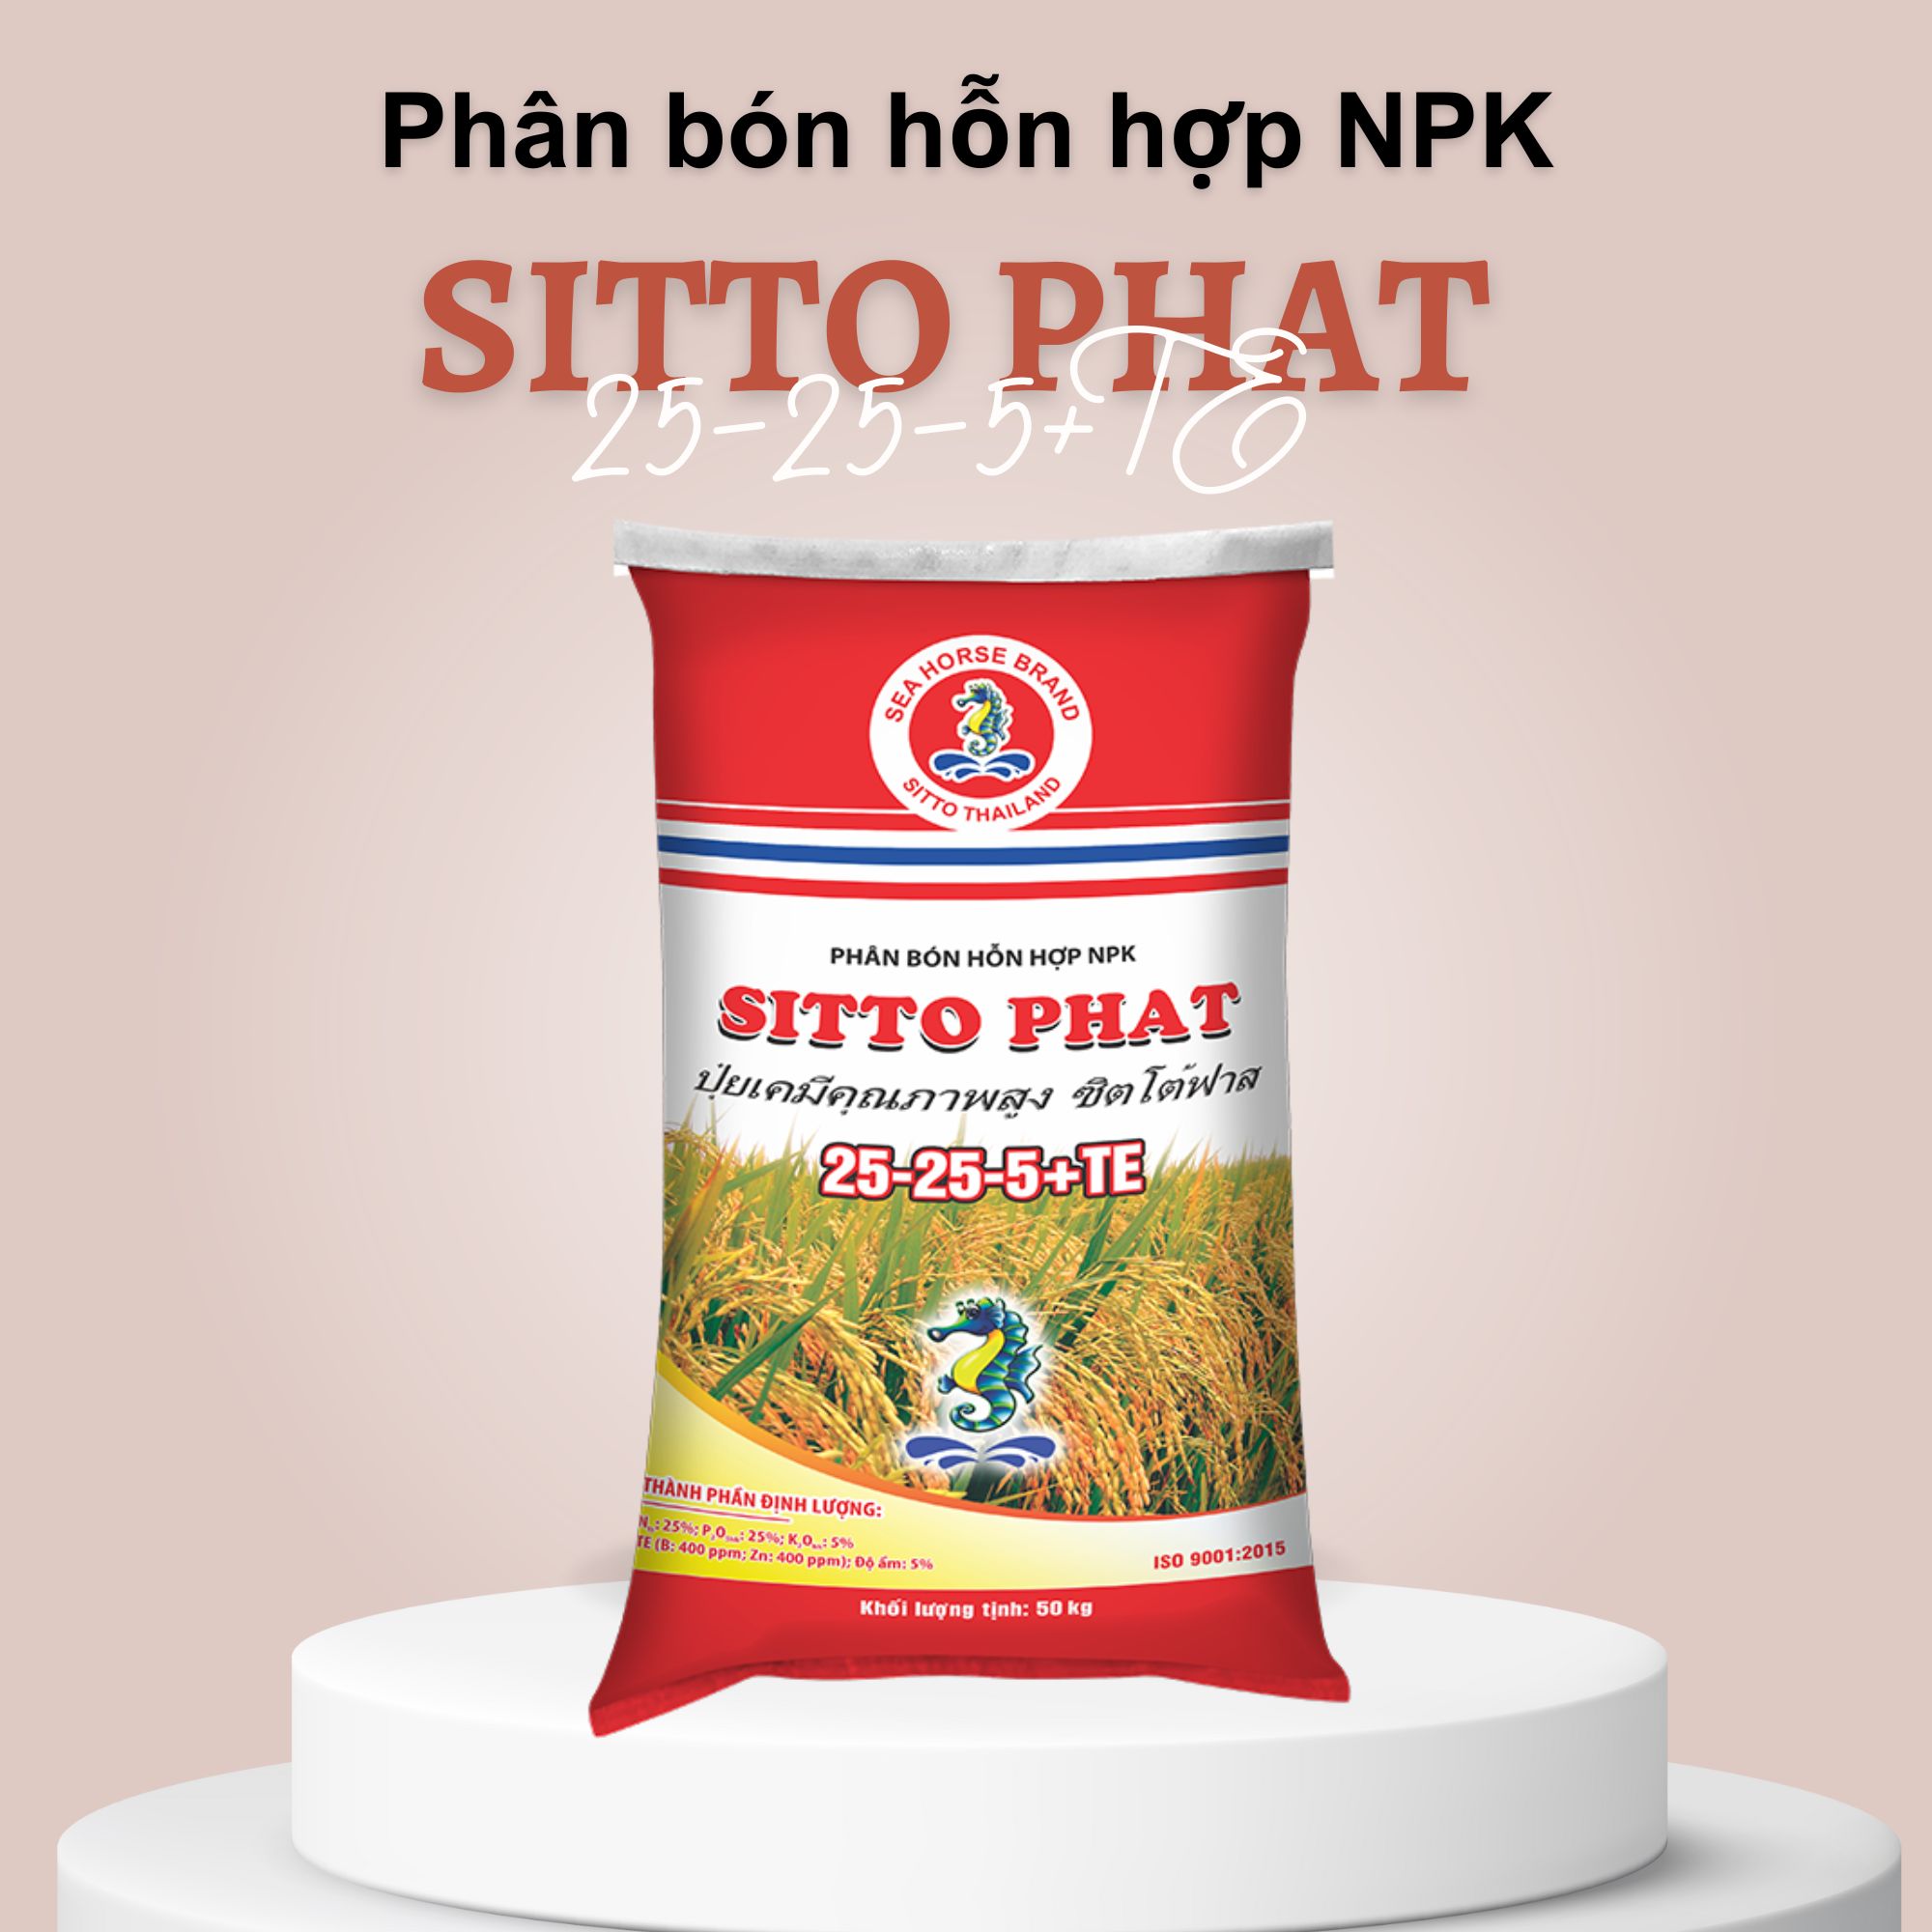 Phân bón NPK Sitto Phat công nghệ - Sitto Phat 25-25-5+TE (Bao 50kg)